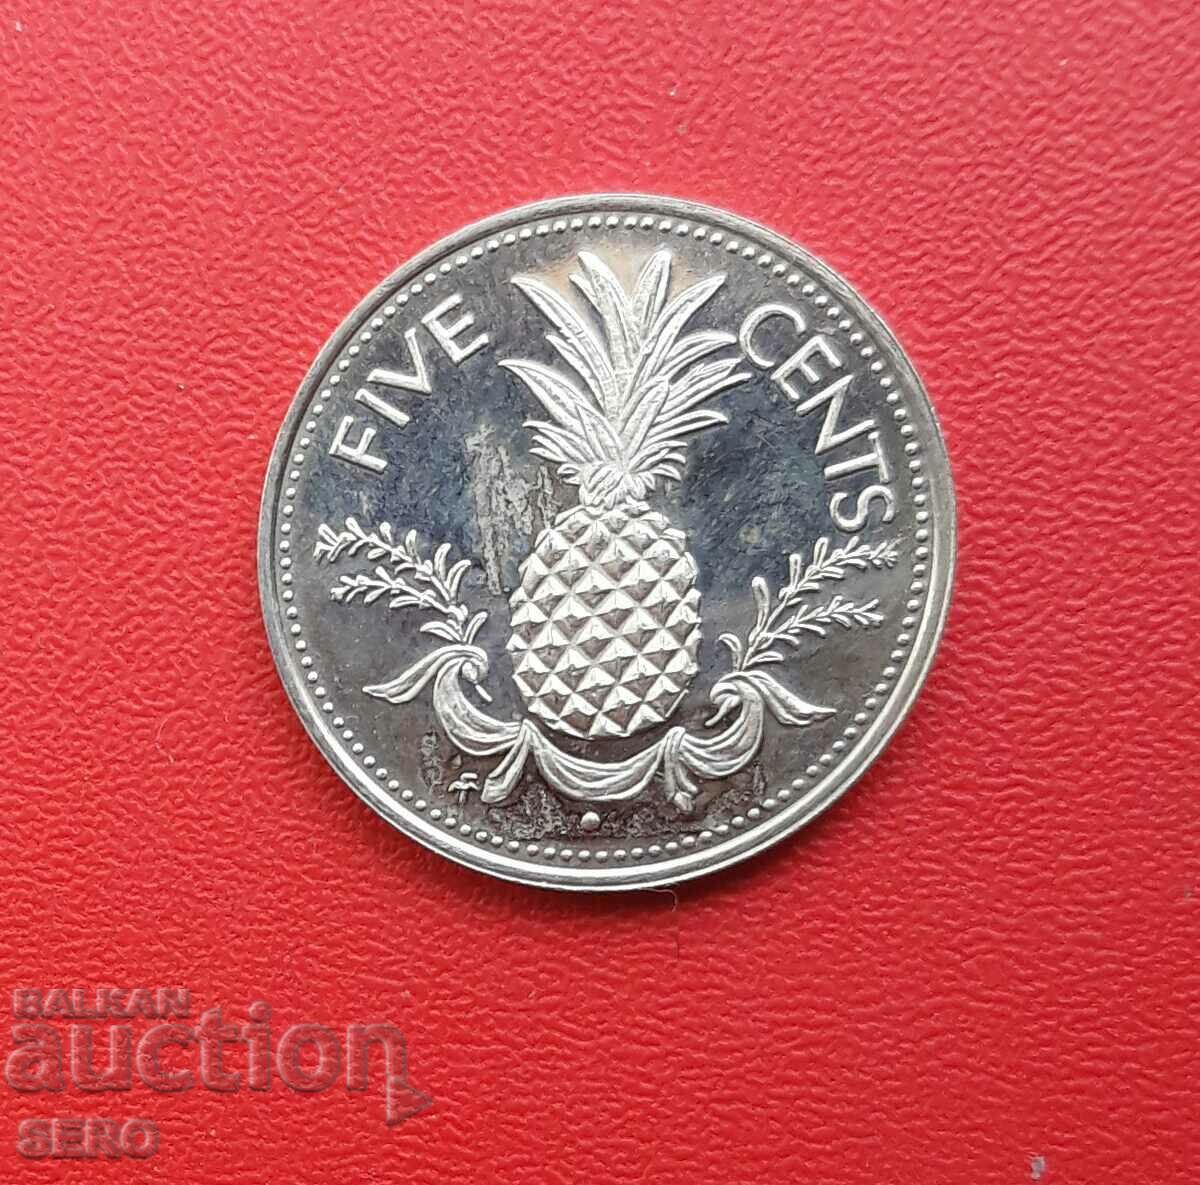 Μπαχάμες-5 cents 1974-μικρή κυκλοφορία 23 τεμ.